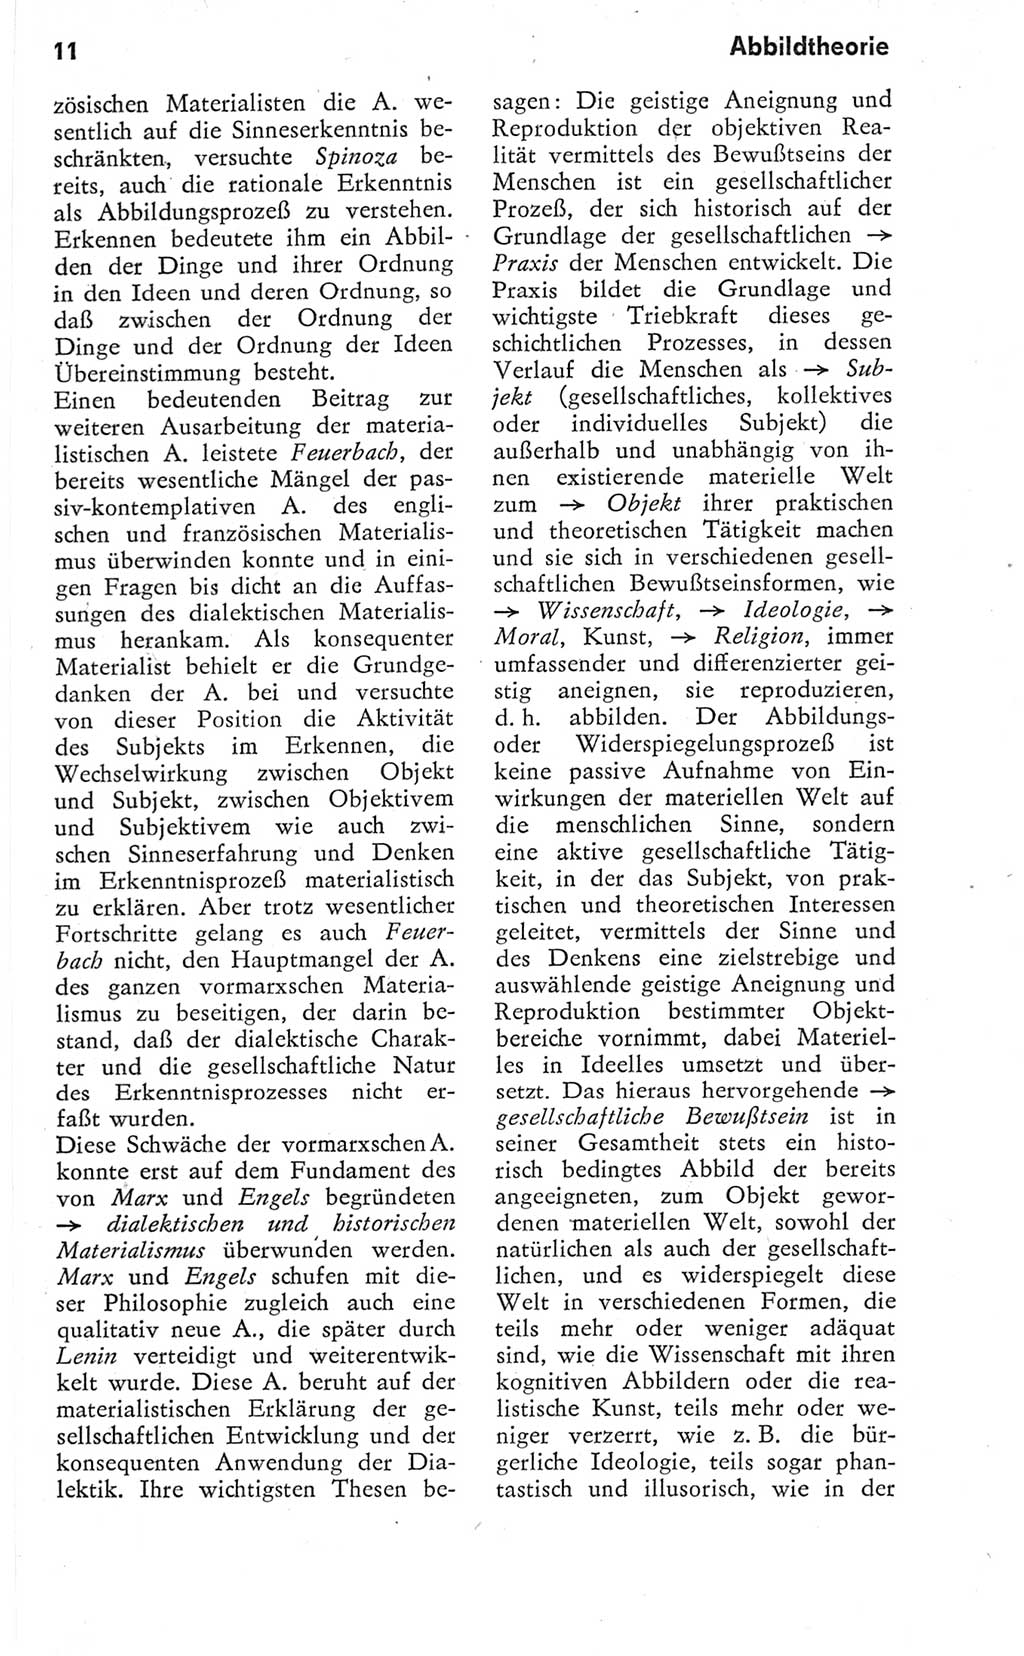 Kleines Wörterbuch der marxistisch-leninistischen Philosophie [Deutsche Demokratische Republik (DDR)] 1974, Seite 11 (Kl. Wb. ML Phil. DDR 1974, S. 11)